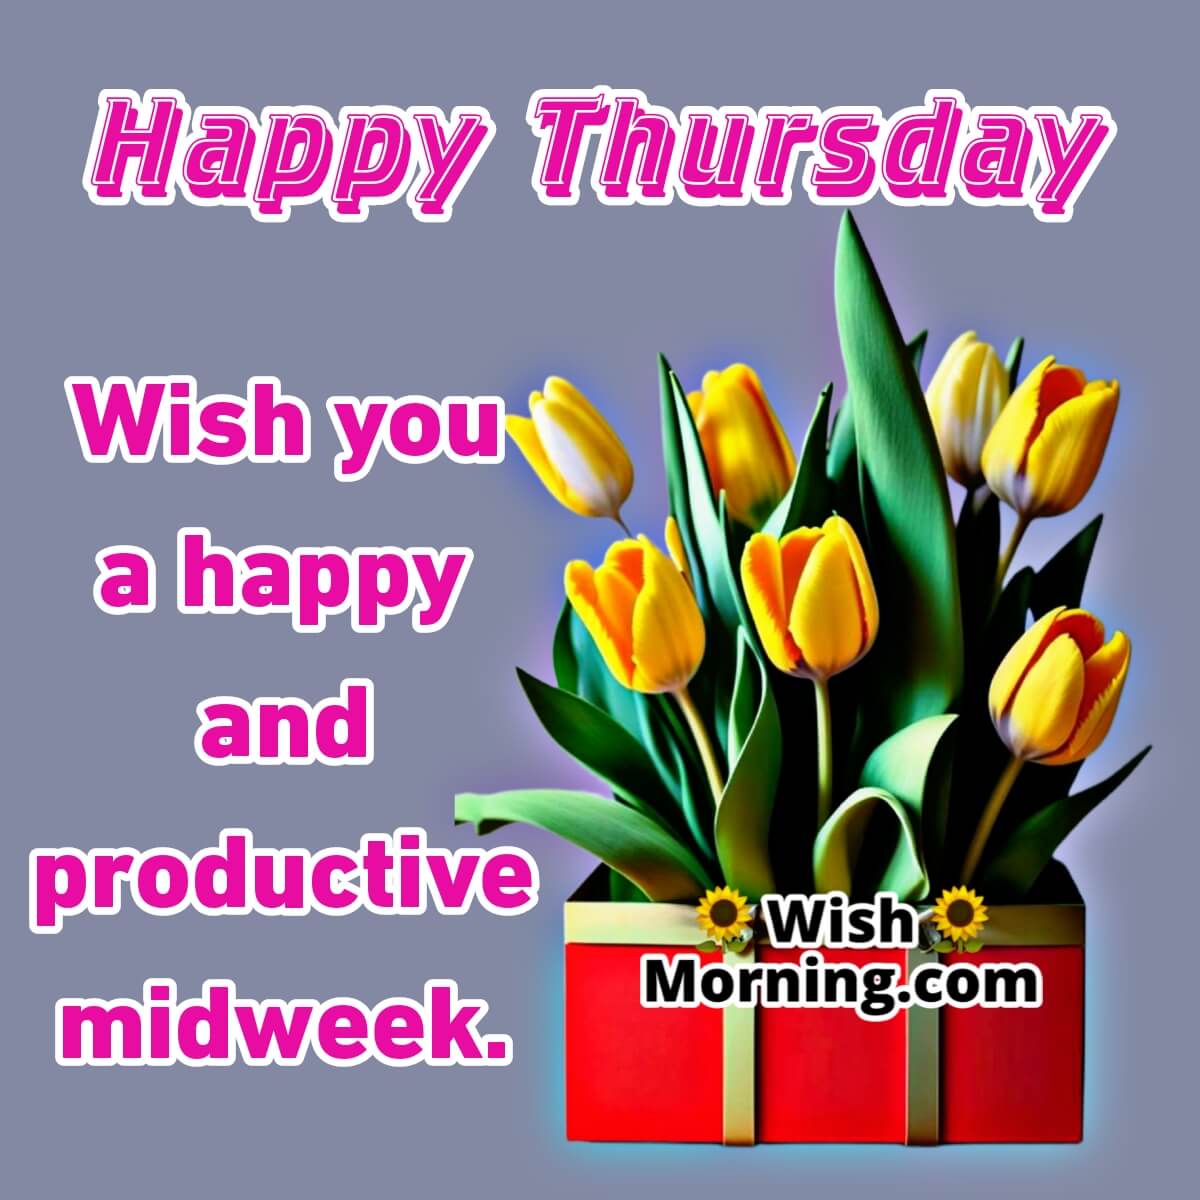 Happy Productive Thursday Morning Wish